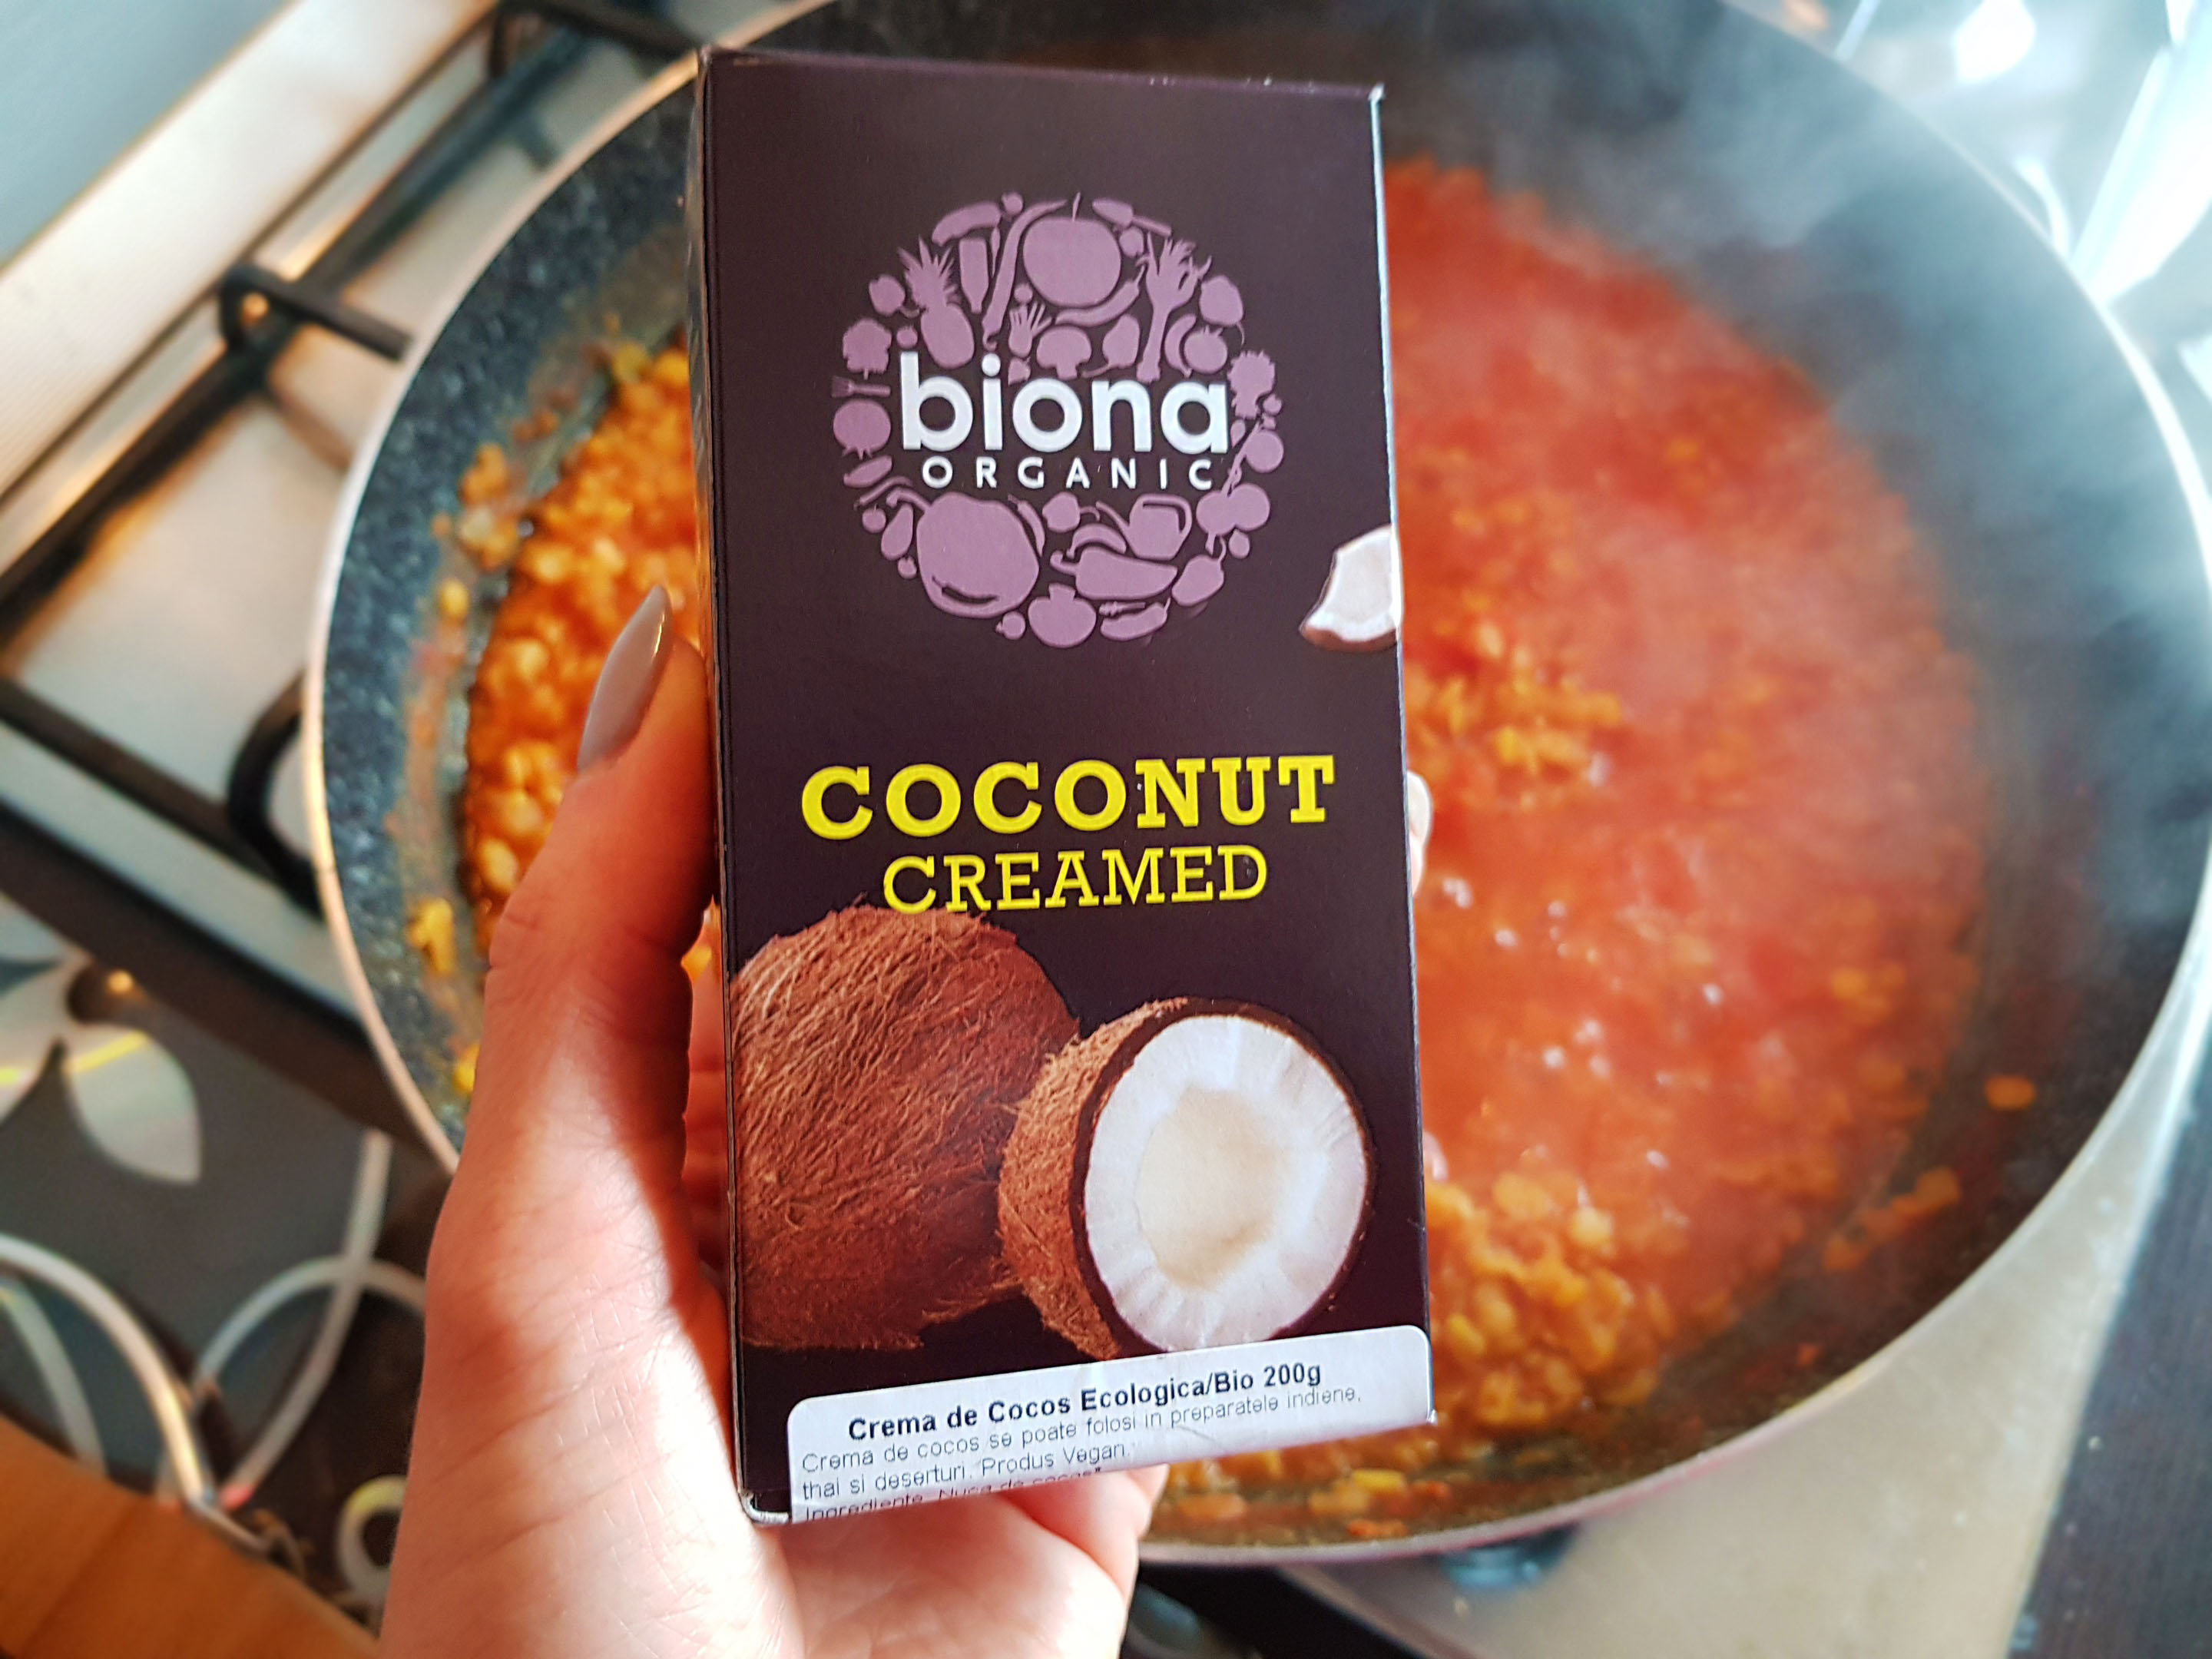 crema de cocos biona organic